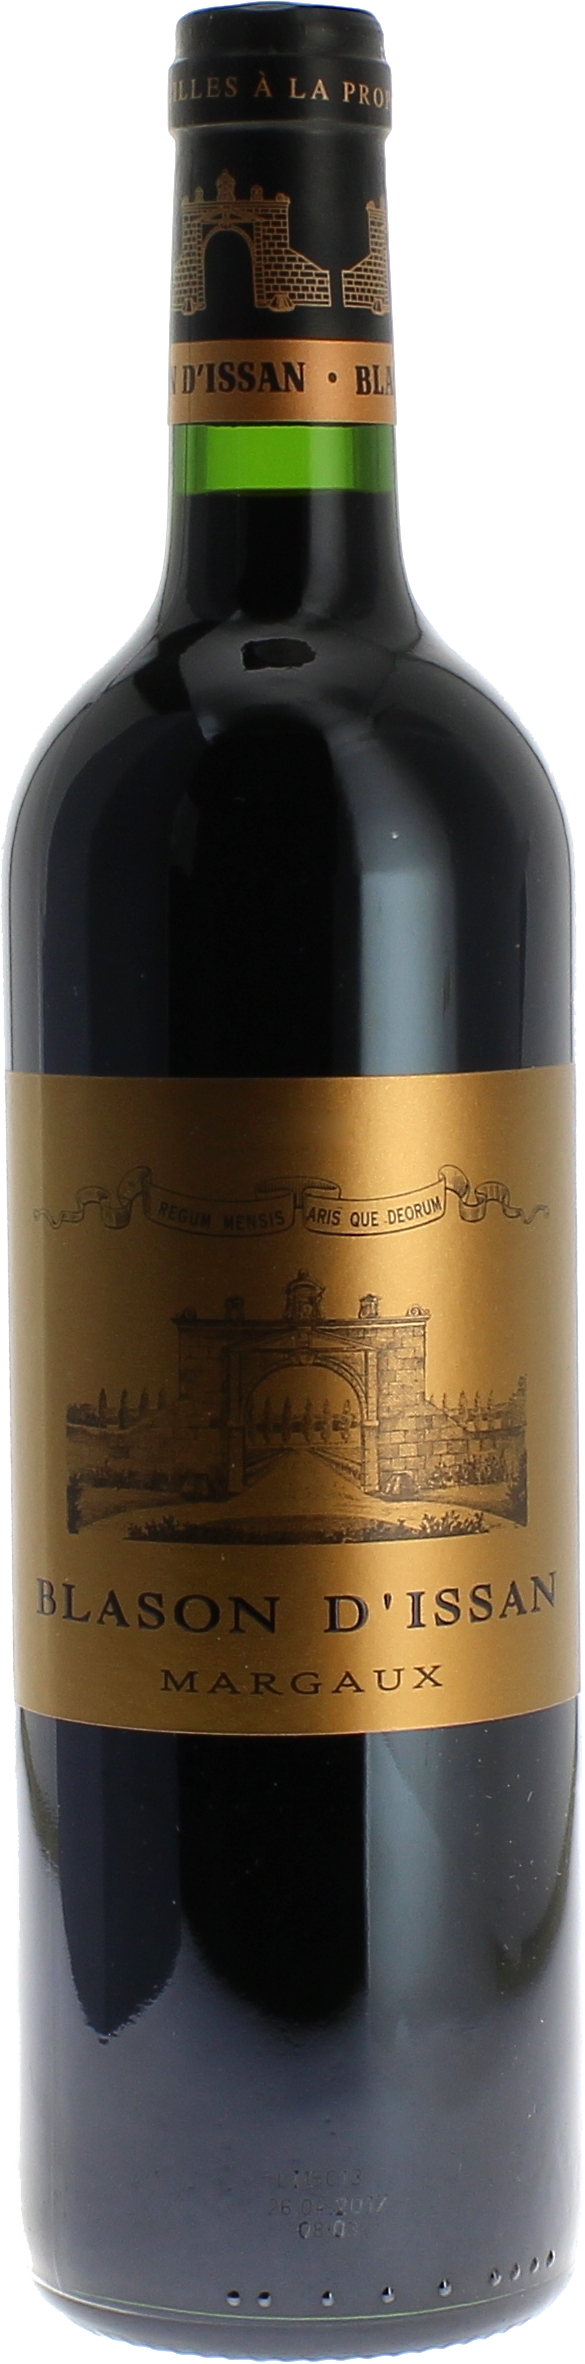 Blason d'issan 2020 2nd vin du Chteau D'Issan Margaux, Bordeaux rouge